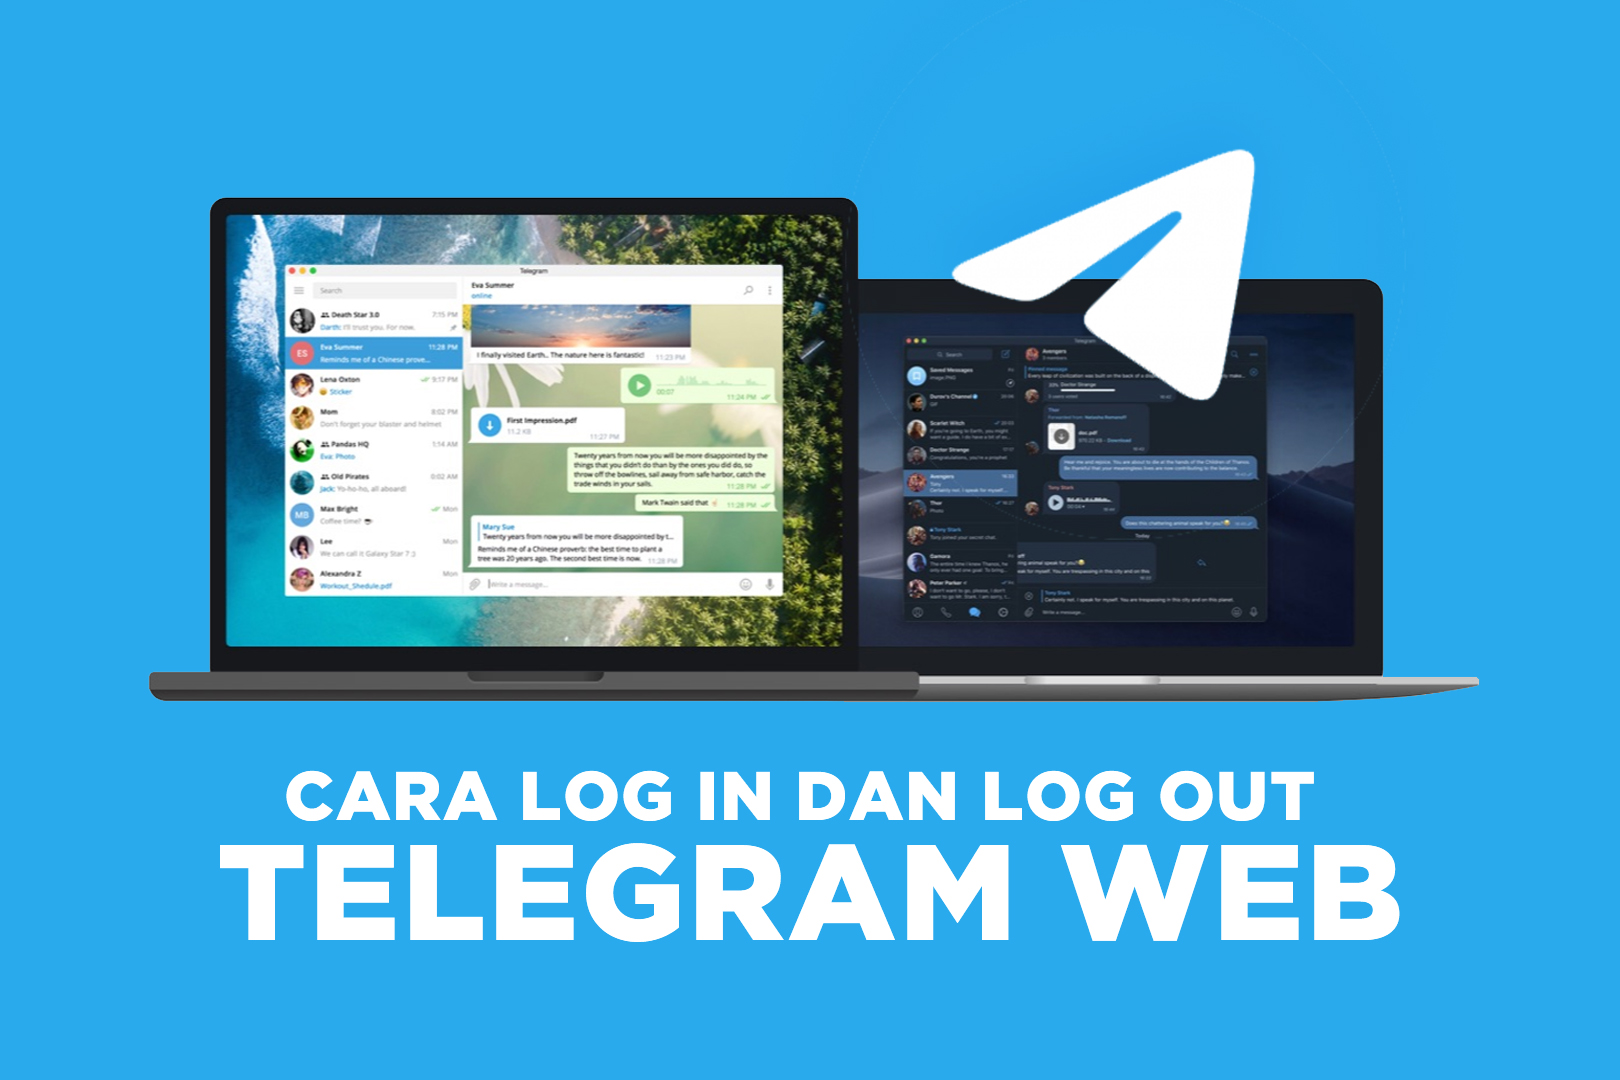 Cara Log In dan Log Out Telegram Web Cepat dan Praktis